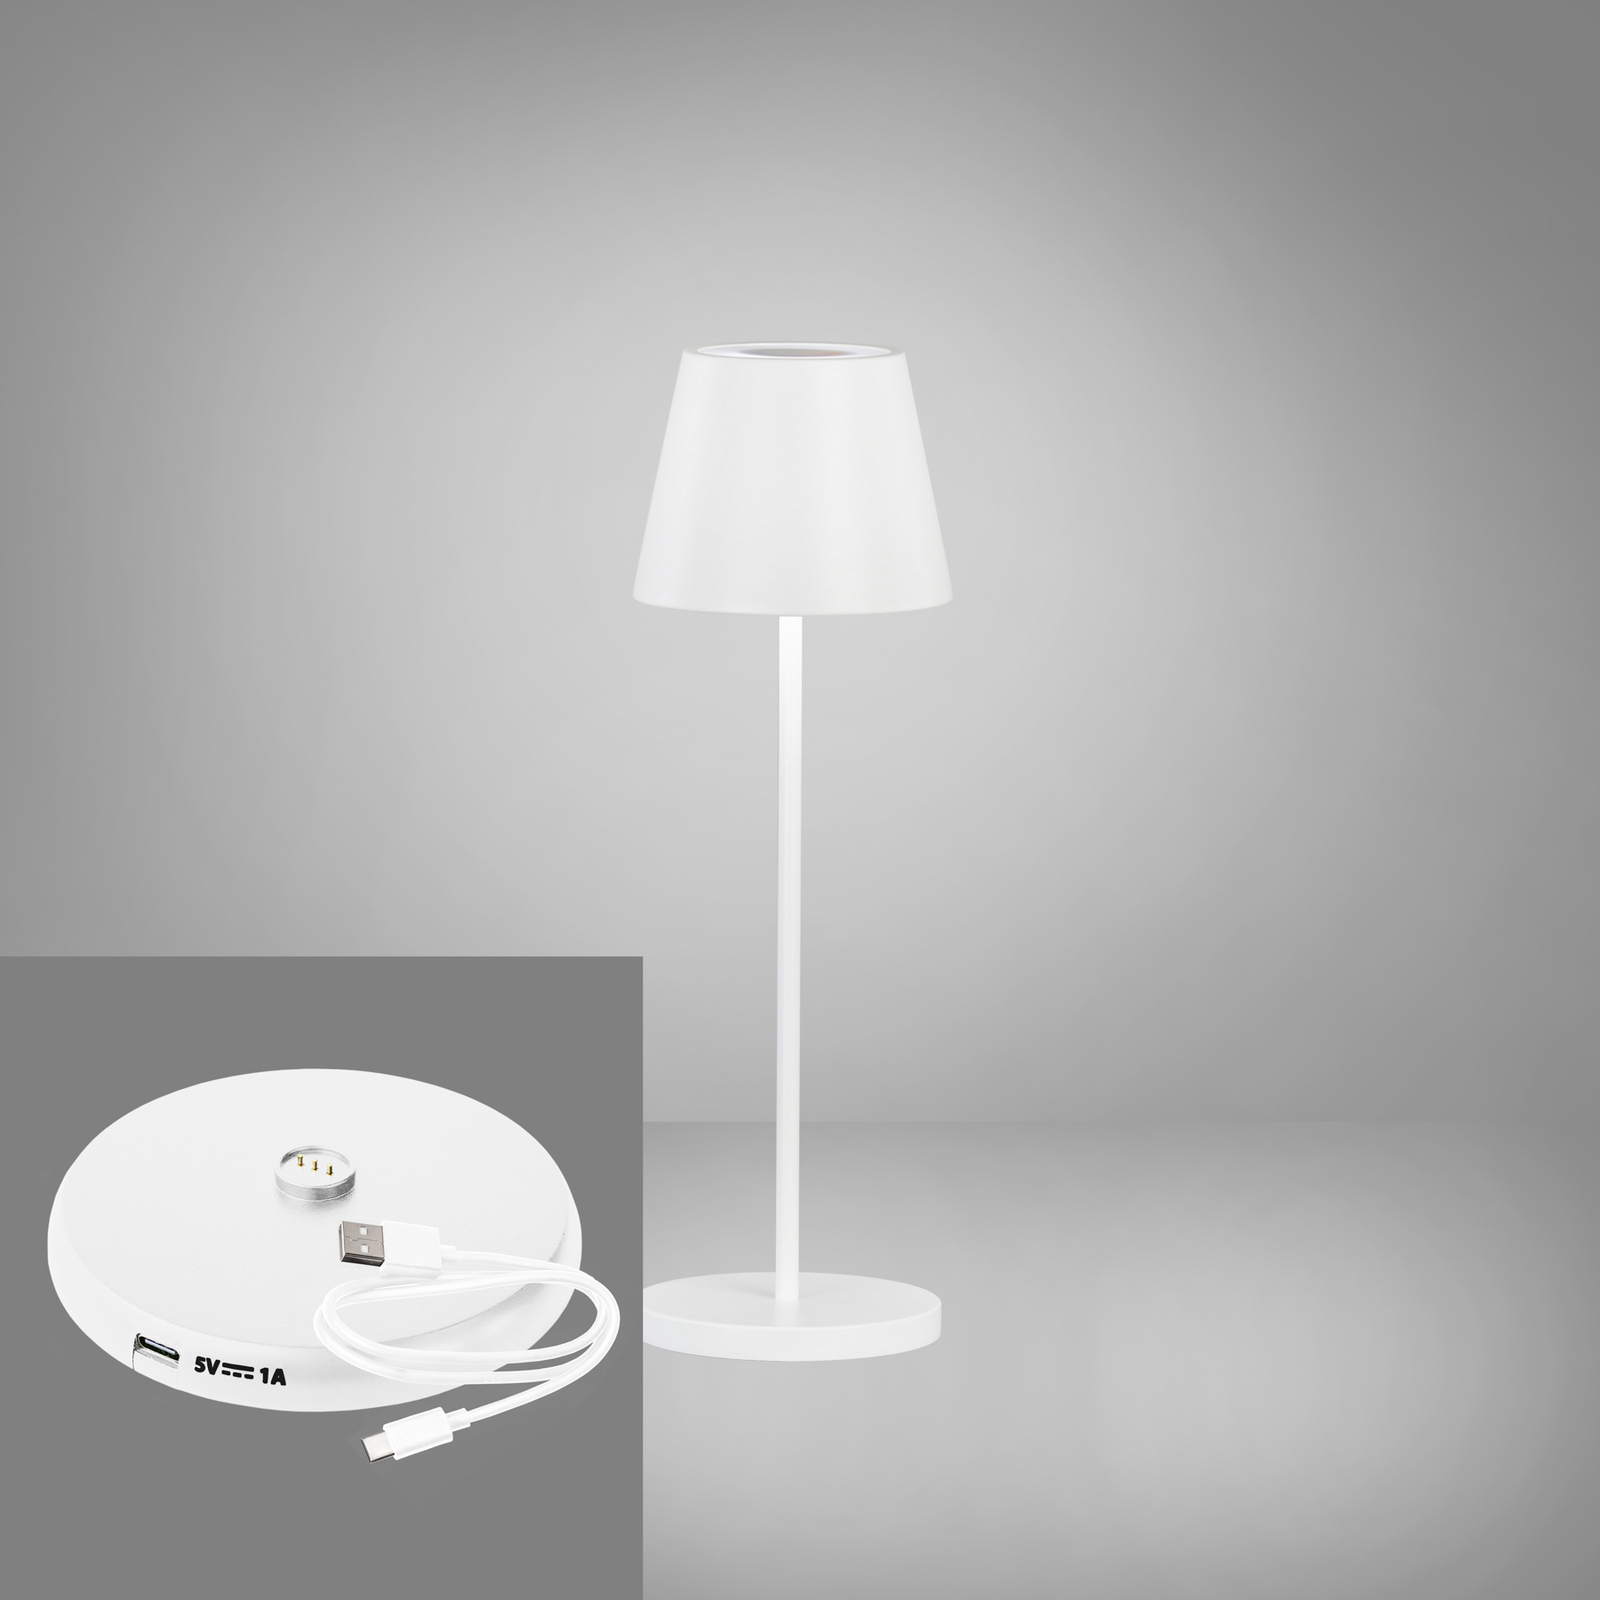 LED акумулаторна настолна лампа Cosenza 2.0 Височина 34 см, пясъчнобяла